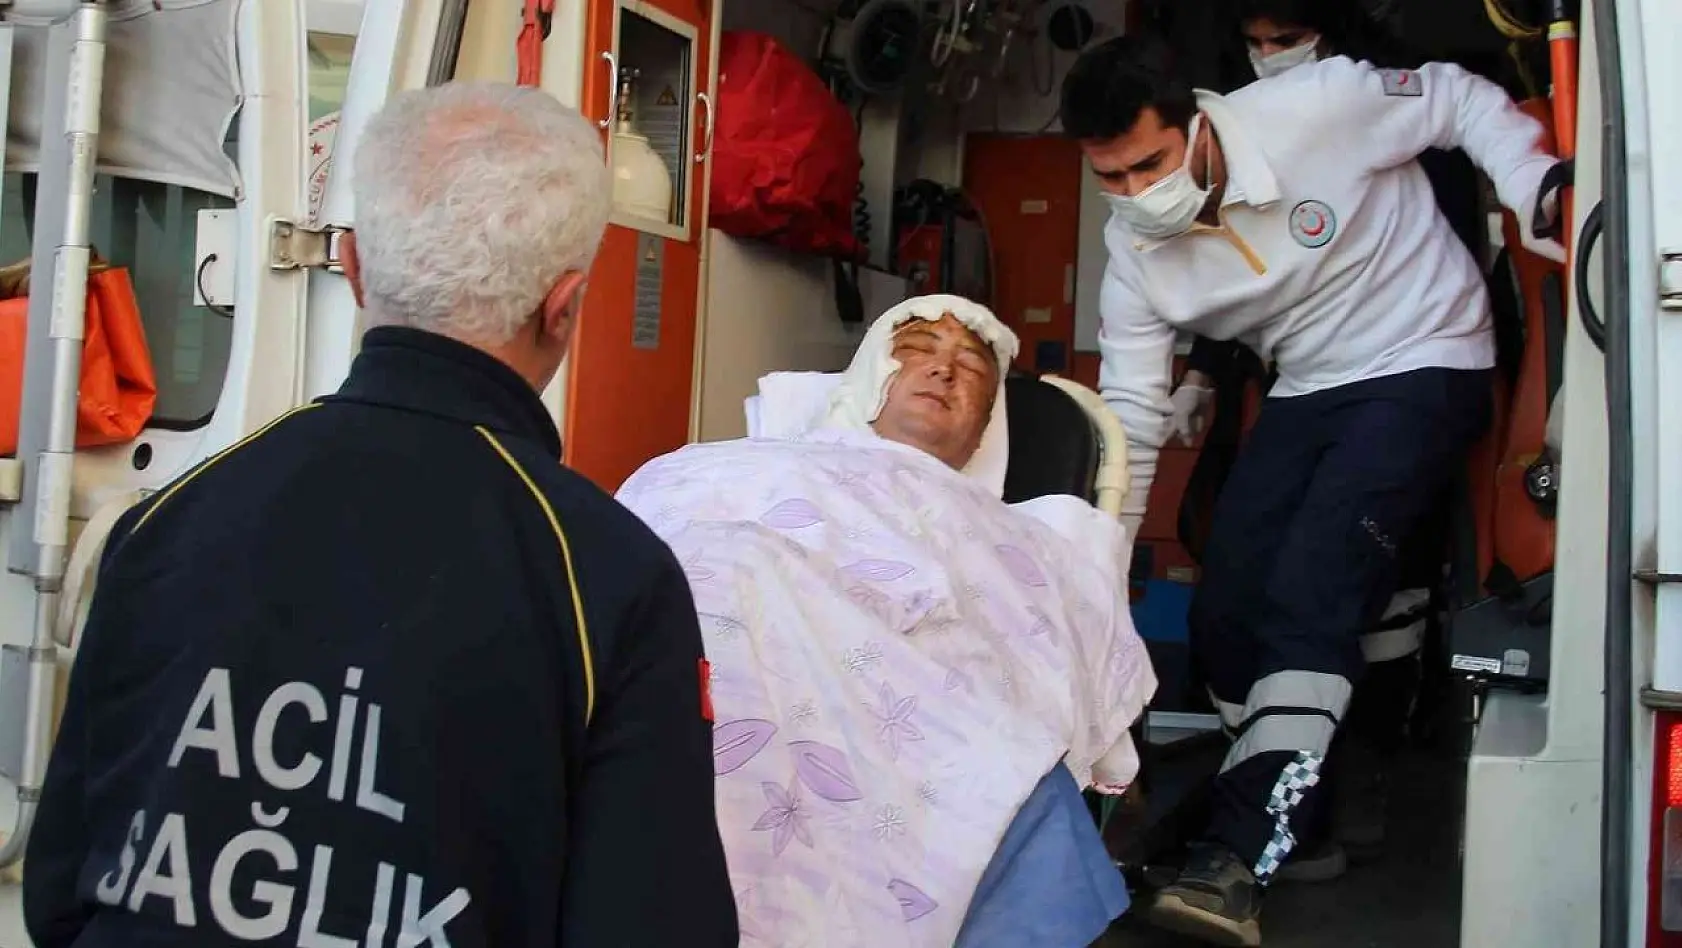 Tarım Kredi Süt Ürünleri fabrikasındaki kazada ağır yaralanan işçi, İzmir'de tedavi altında